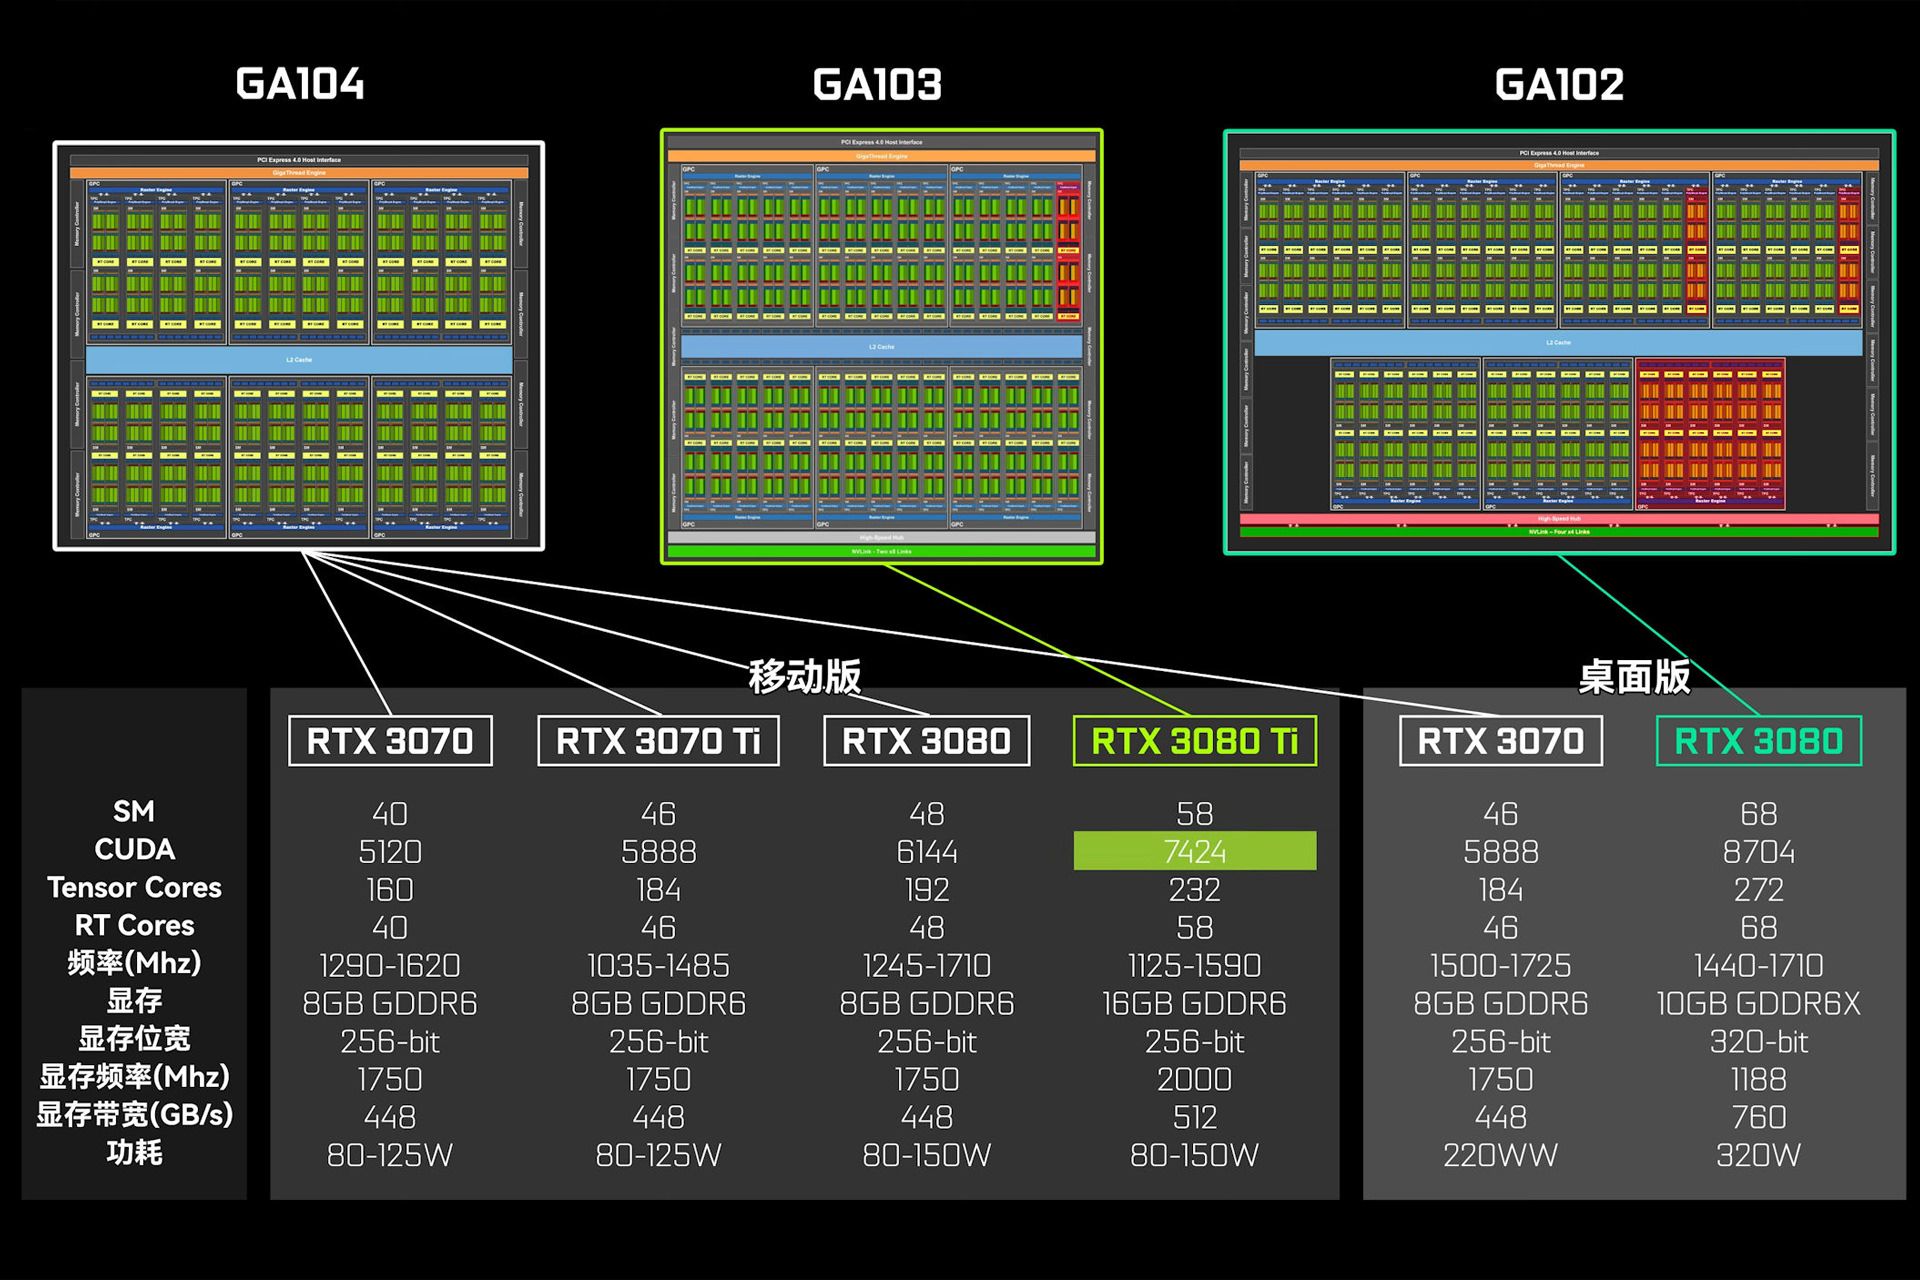 مقایسه پردازنده گرافیکی GA103 انویدیا با GA104 و GA102